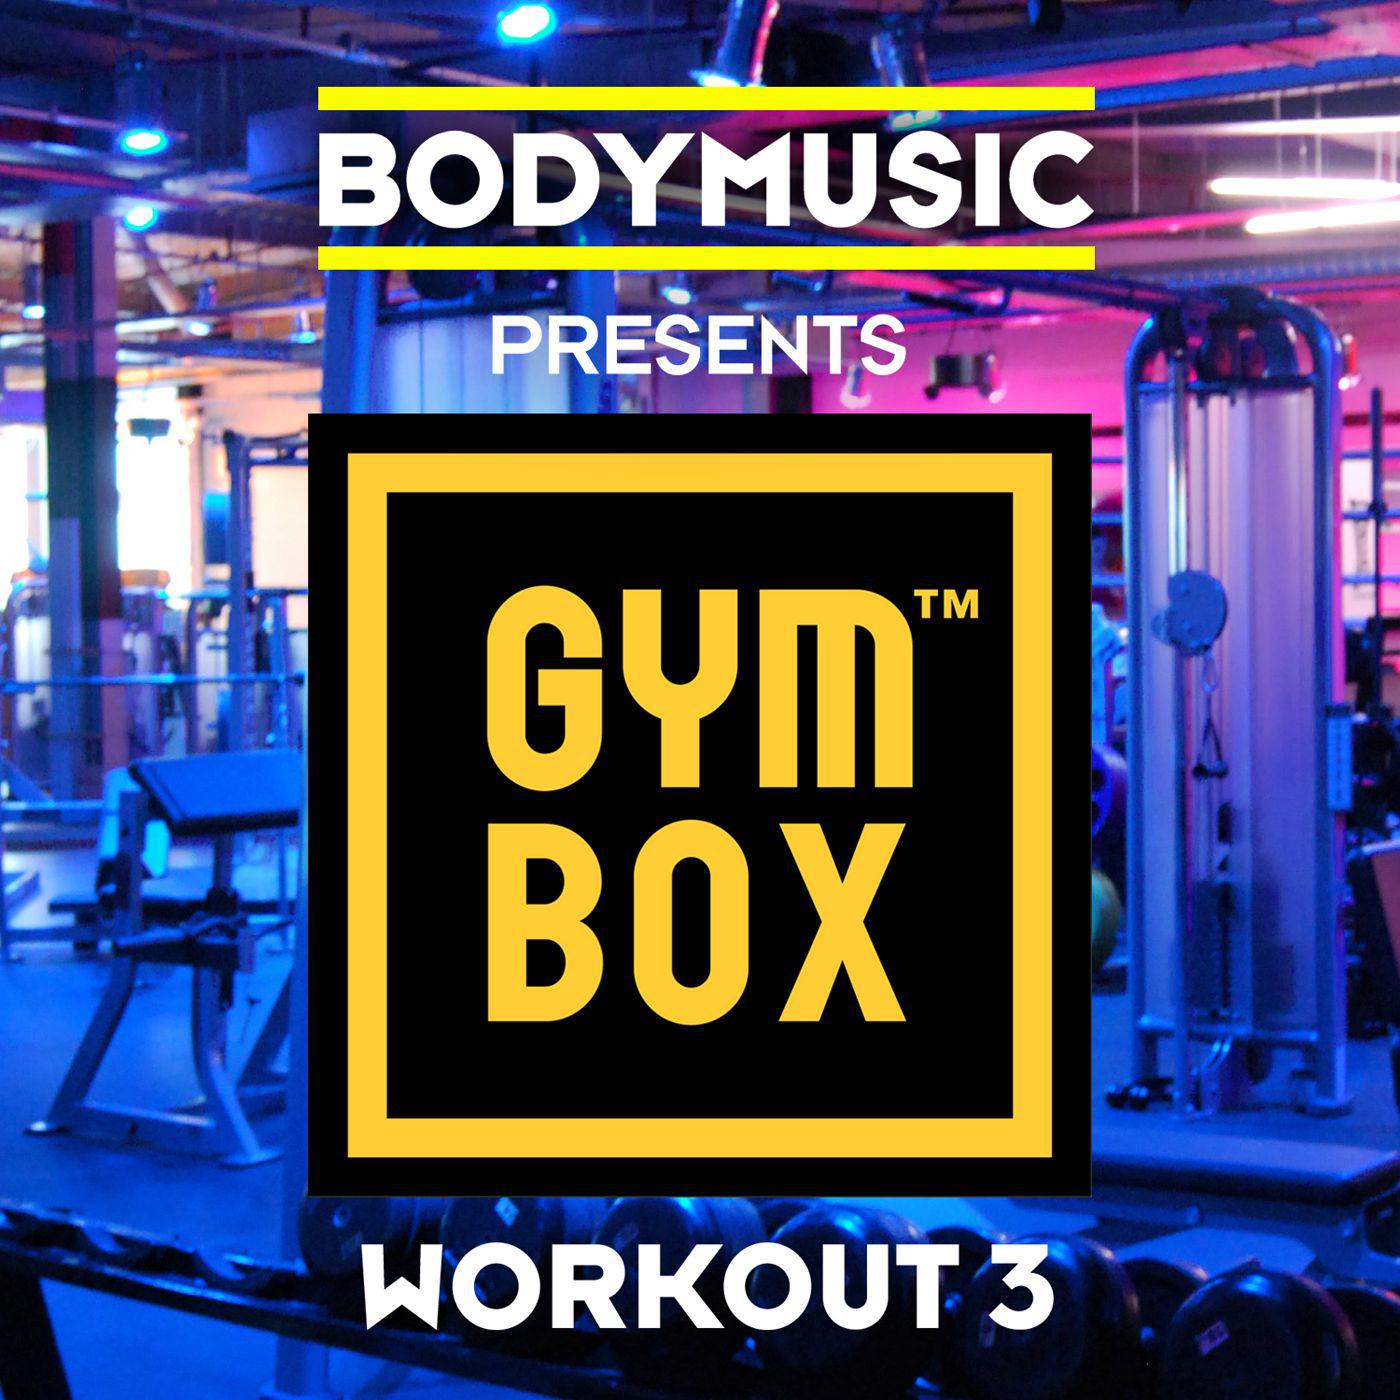 Bodymusic Presents Gymbox - Workout 3 - Cardio Mix